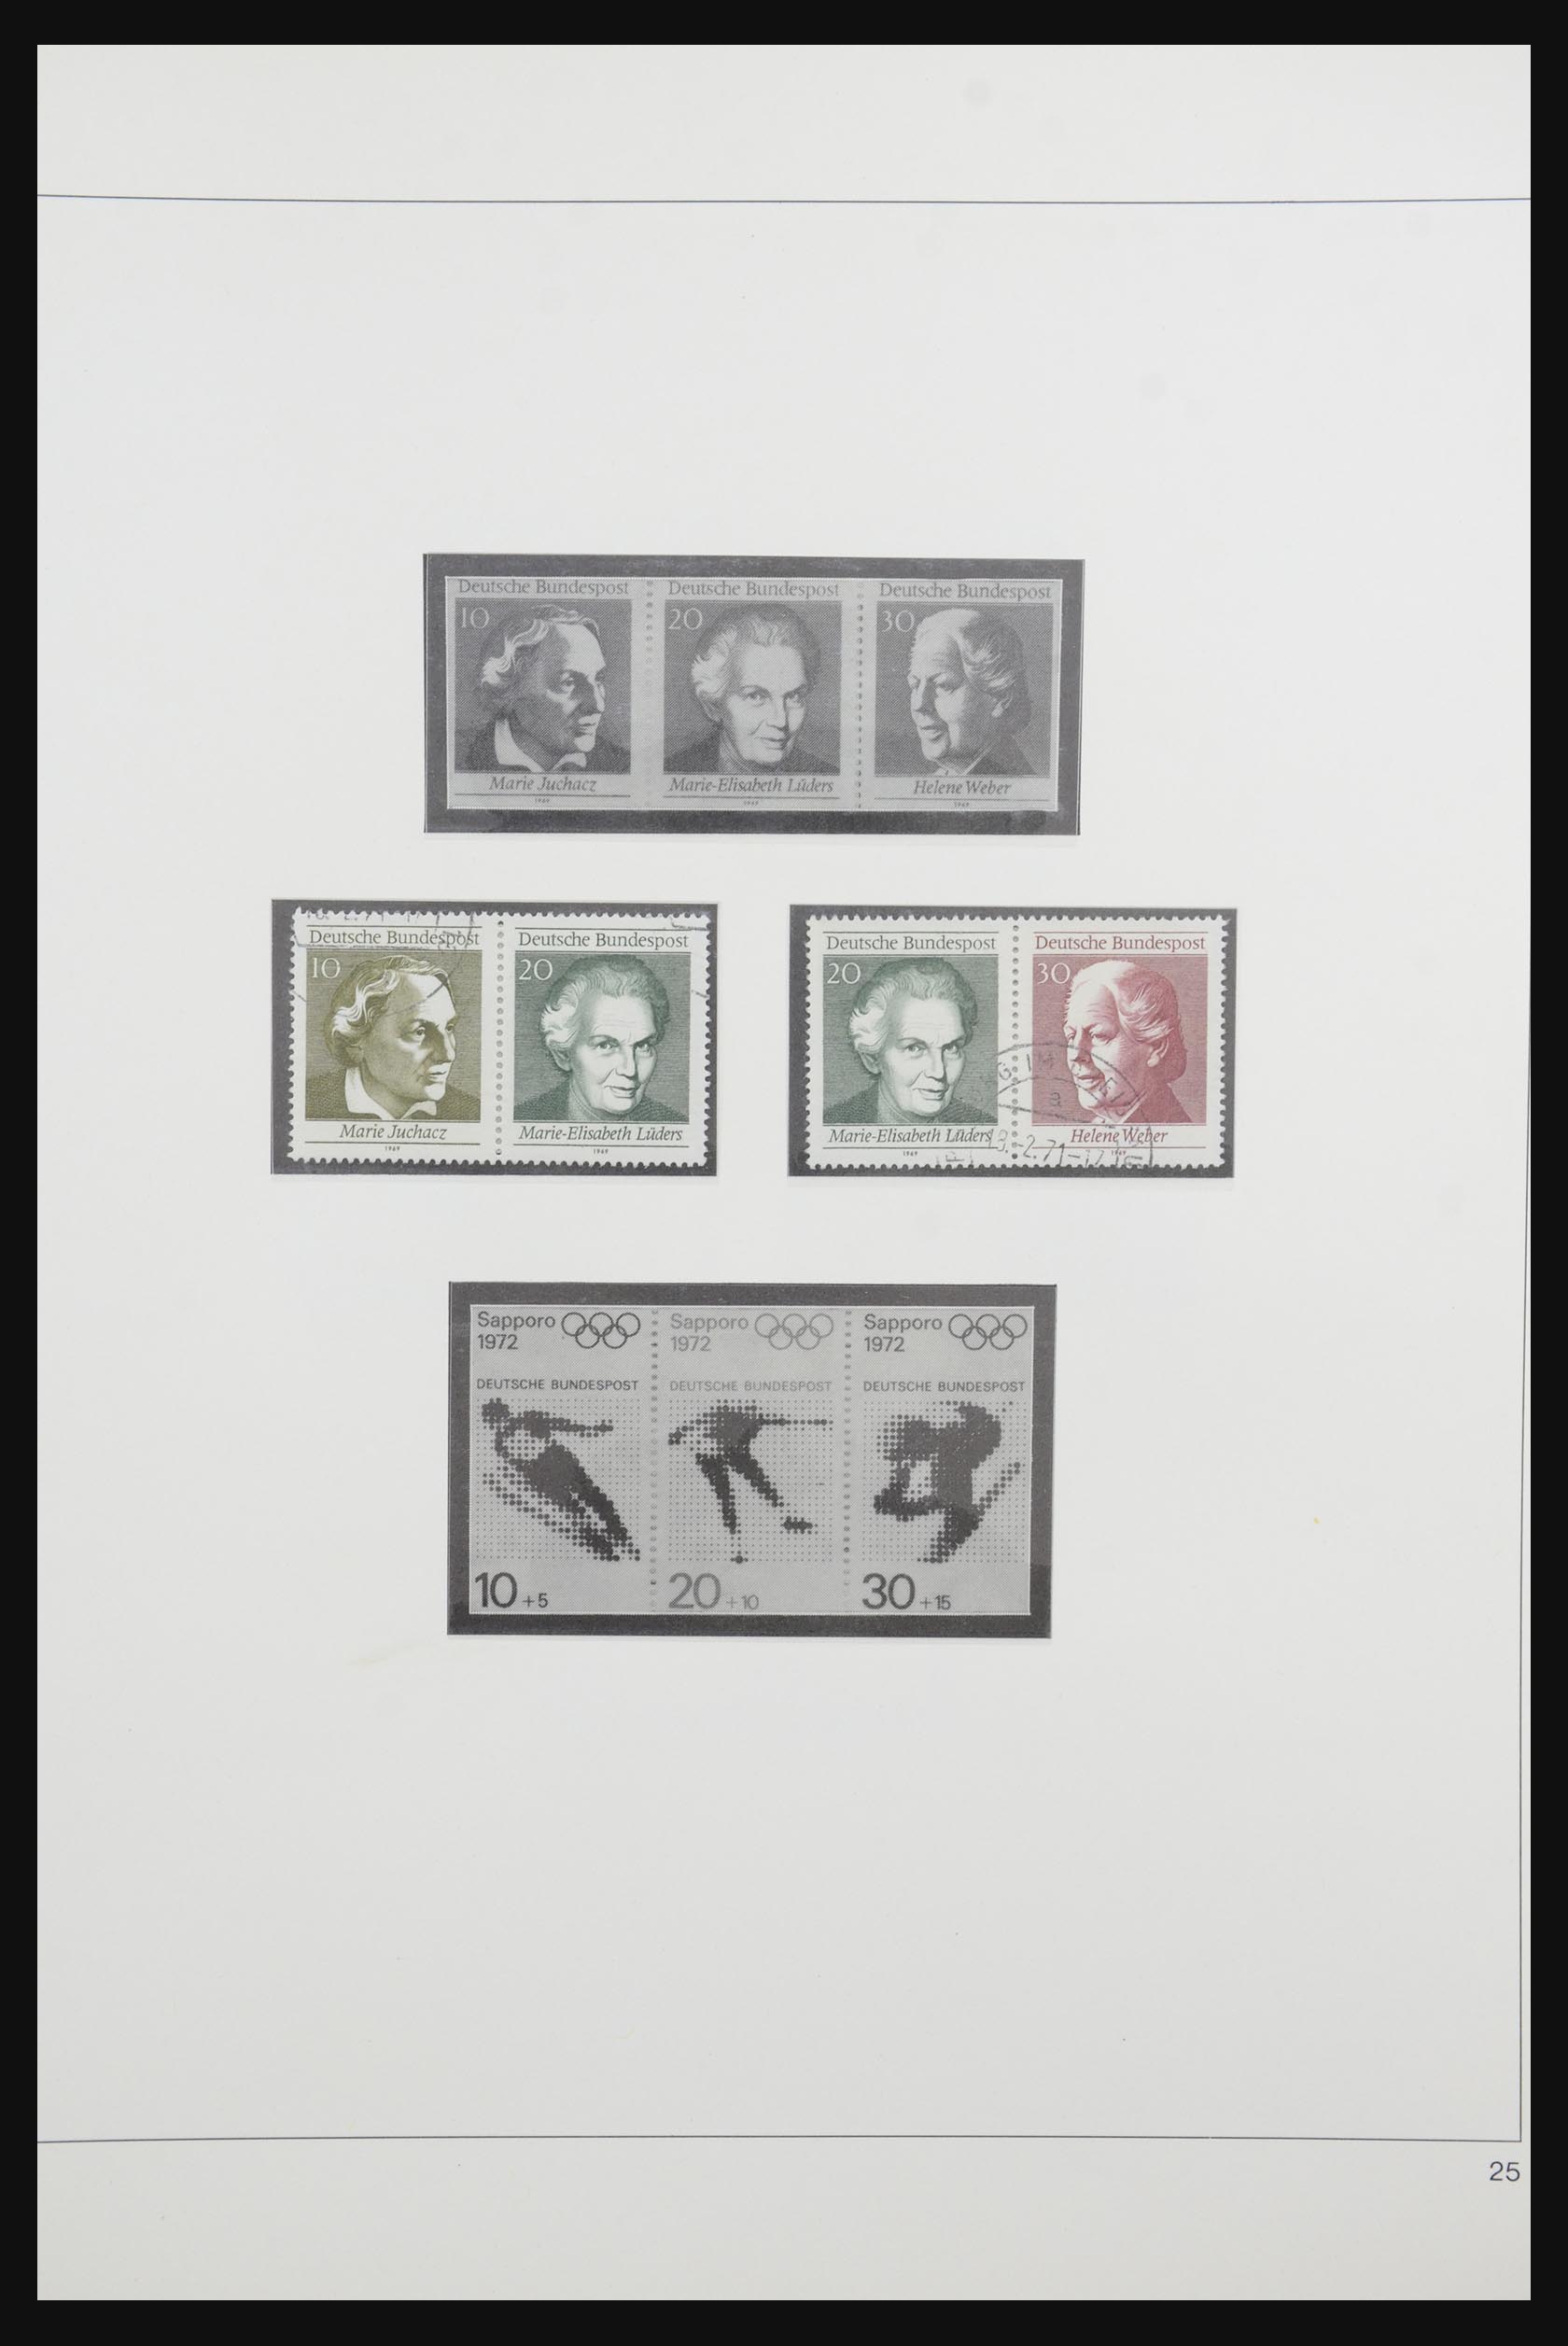 31842 035 - 31842 Bundespost combinations 1951-2003.